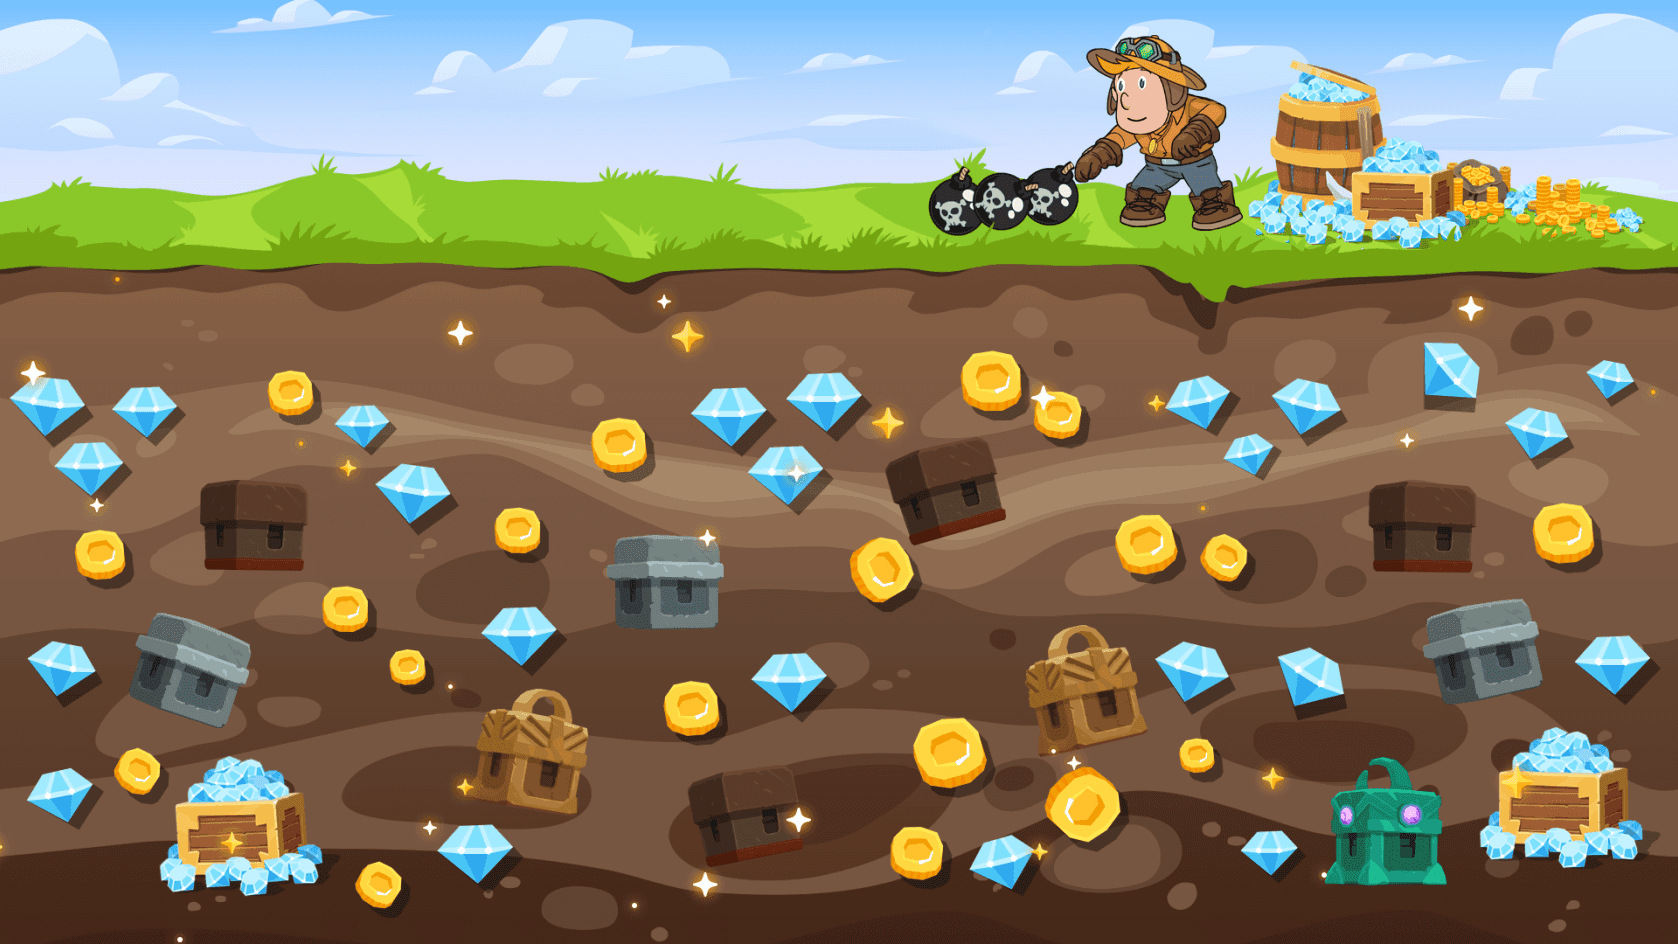 Midas Miner ist das führende Goldminenspiel auf Binance Smart Chain und bietet NFT-Gegenstände und ein lohnendes Spiel-zu-Verdienen-Erlebnis.